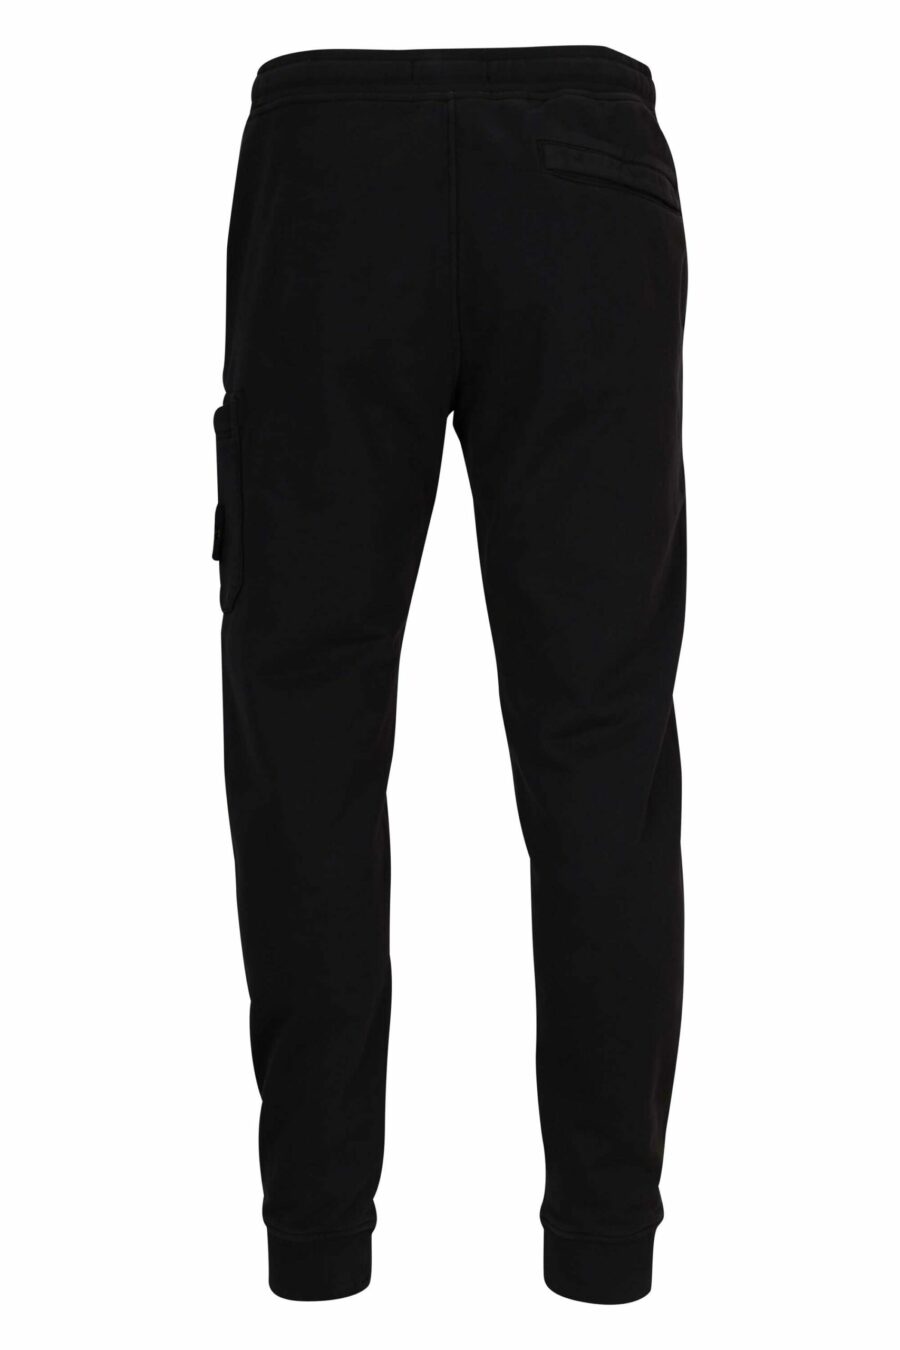 Pantalón de chándal negro con logo parche brújula - 8052572852862 2 scaled